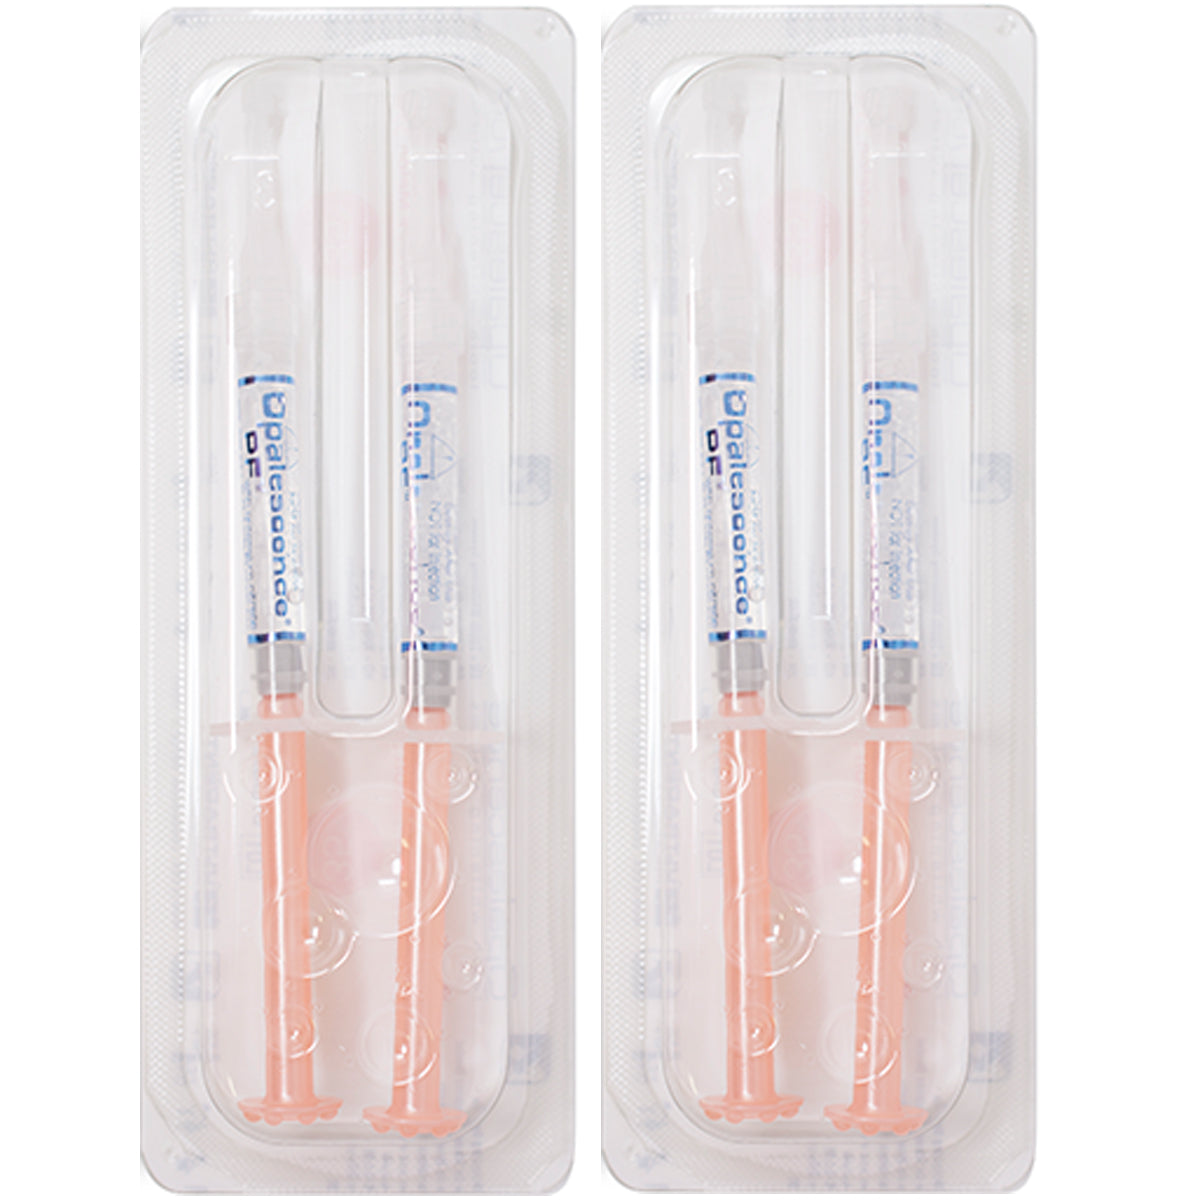 Opalescence 15% Regular | 20 Syringe Pack | FRESH EXPS 5399